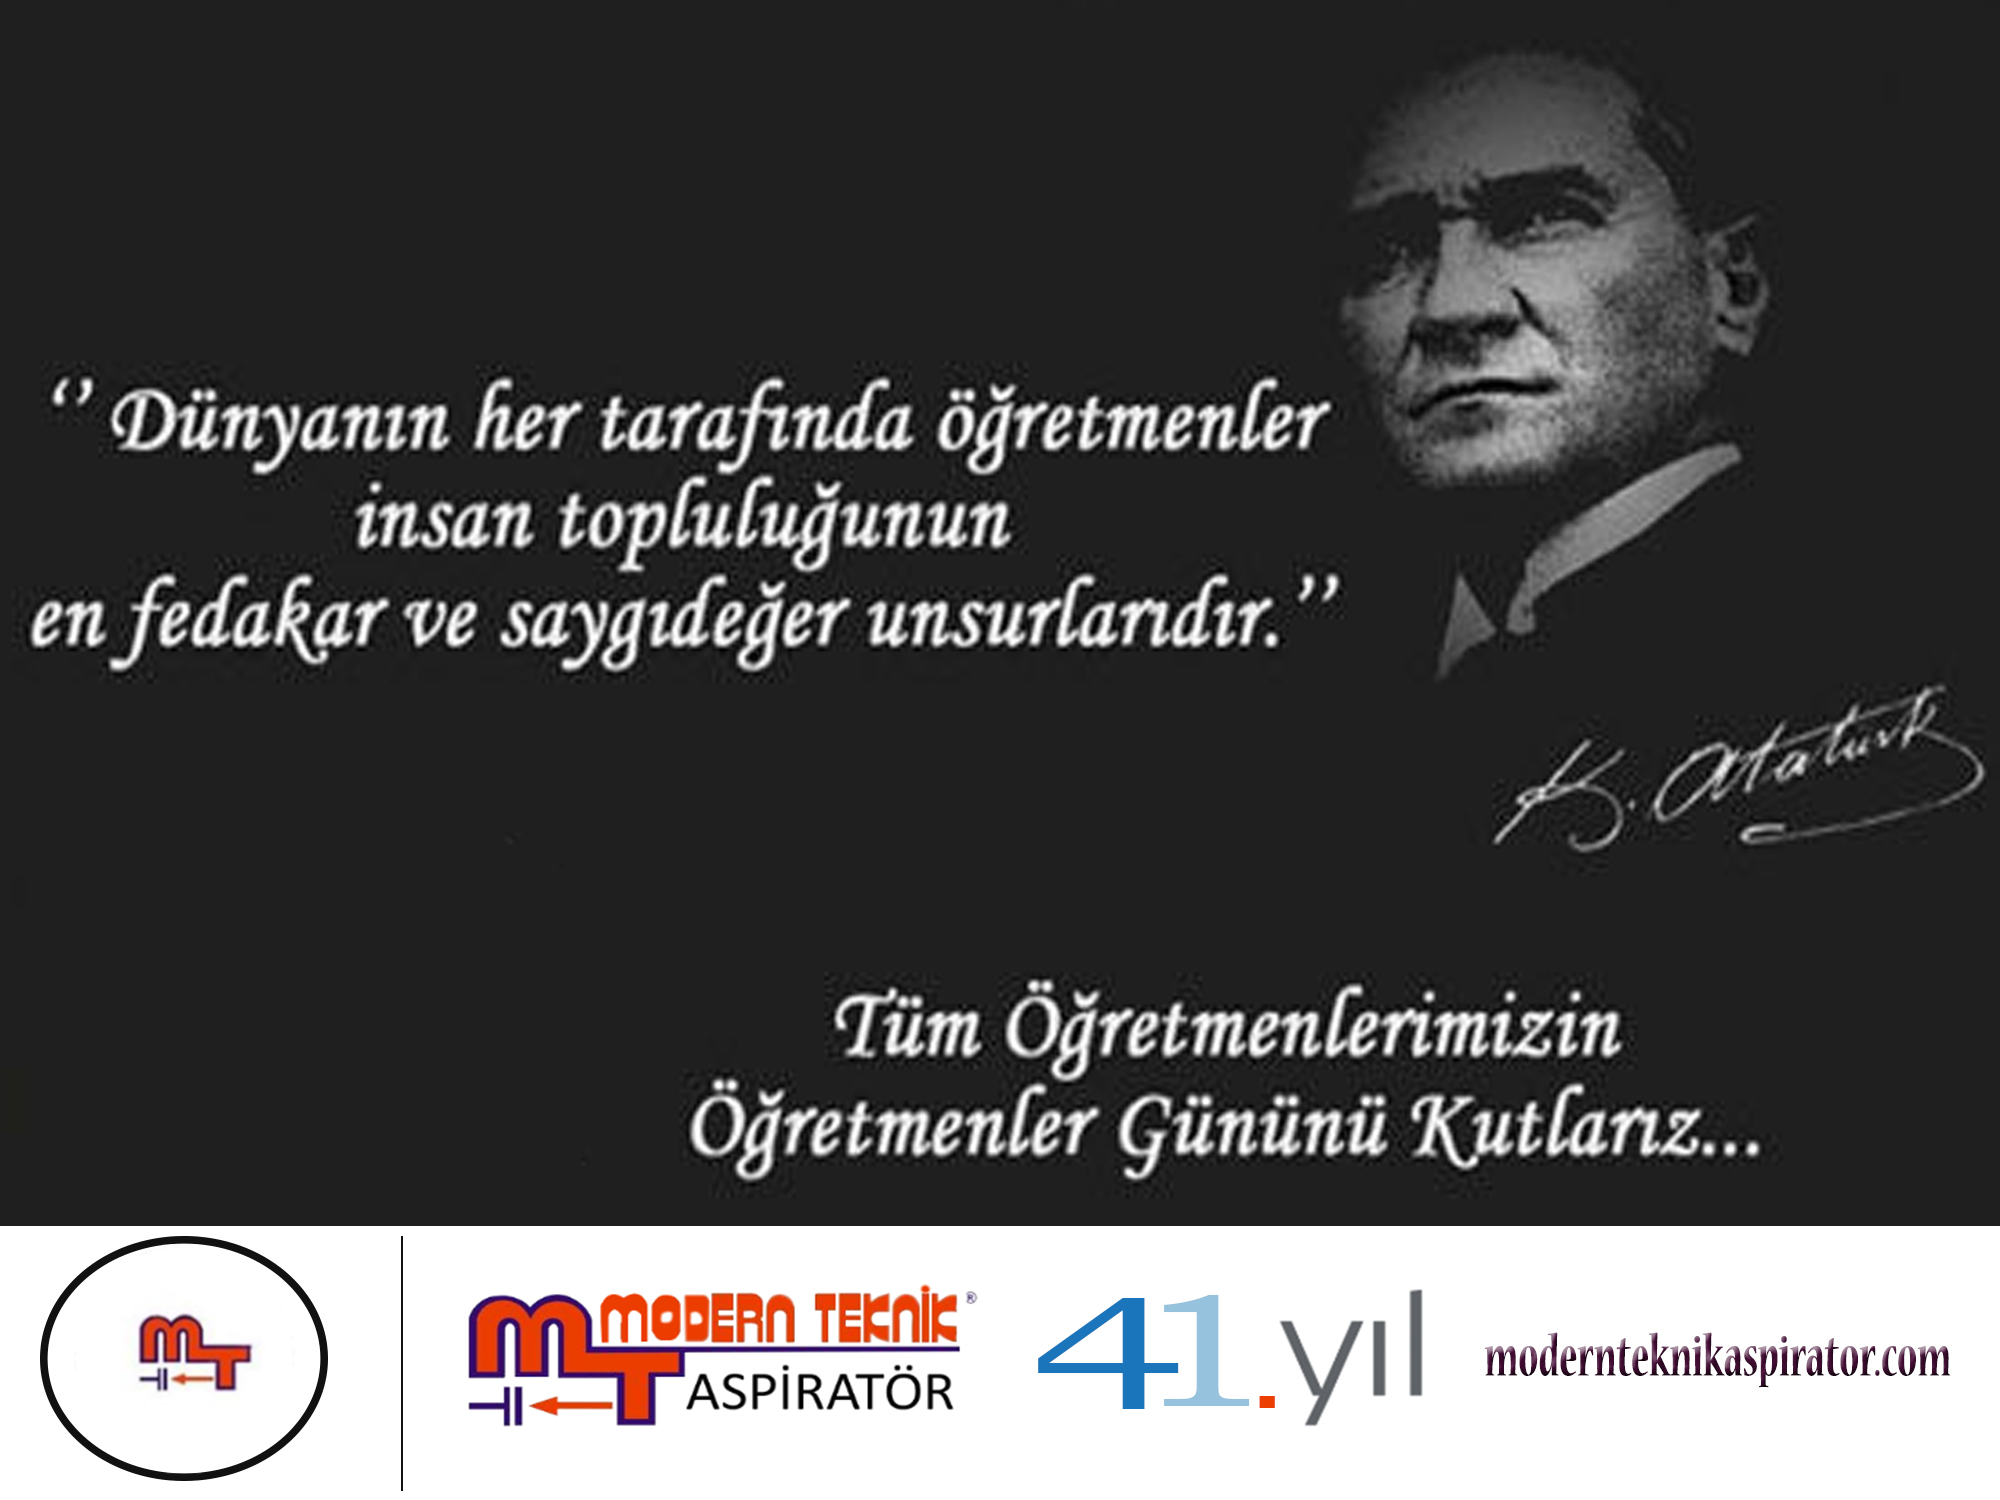 Başta Başöğretmen Gazi Mustafa Kemal Atatürk olmak üzere Tüm Öğretmenlerimizin 24 Kasım Öğretmen Gün